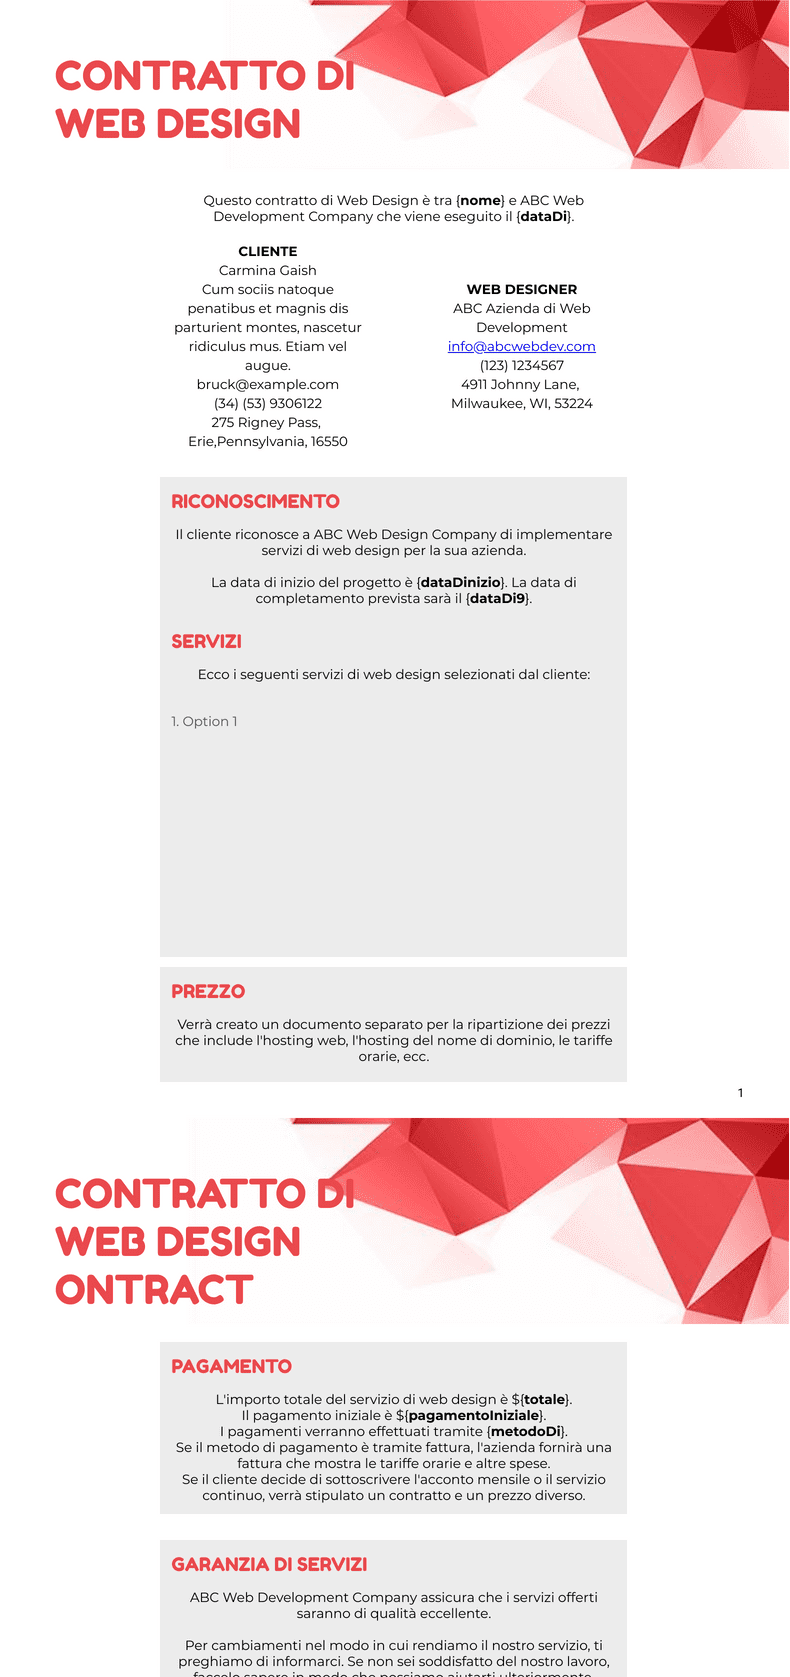 PDF Templates: Contratto di web design